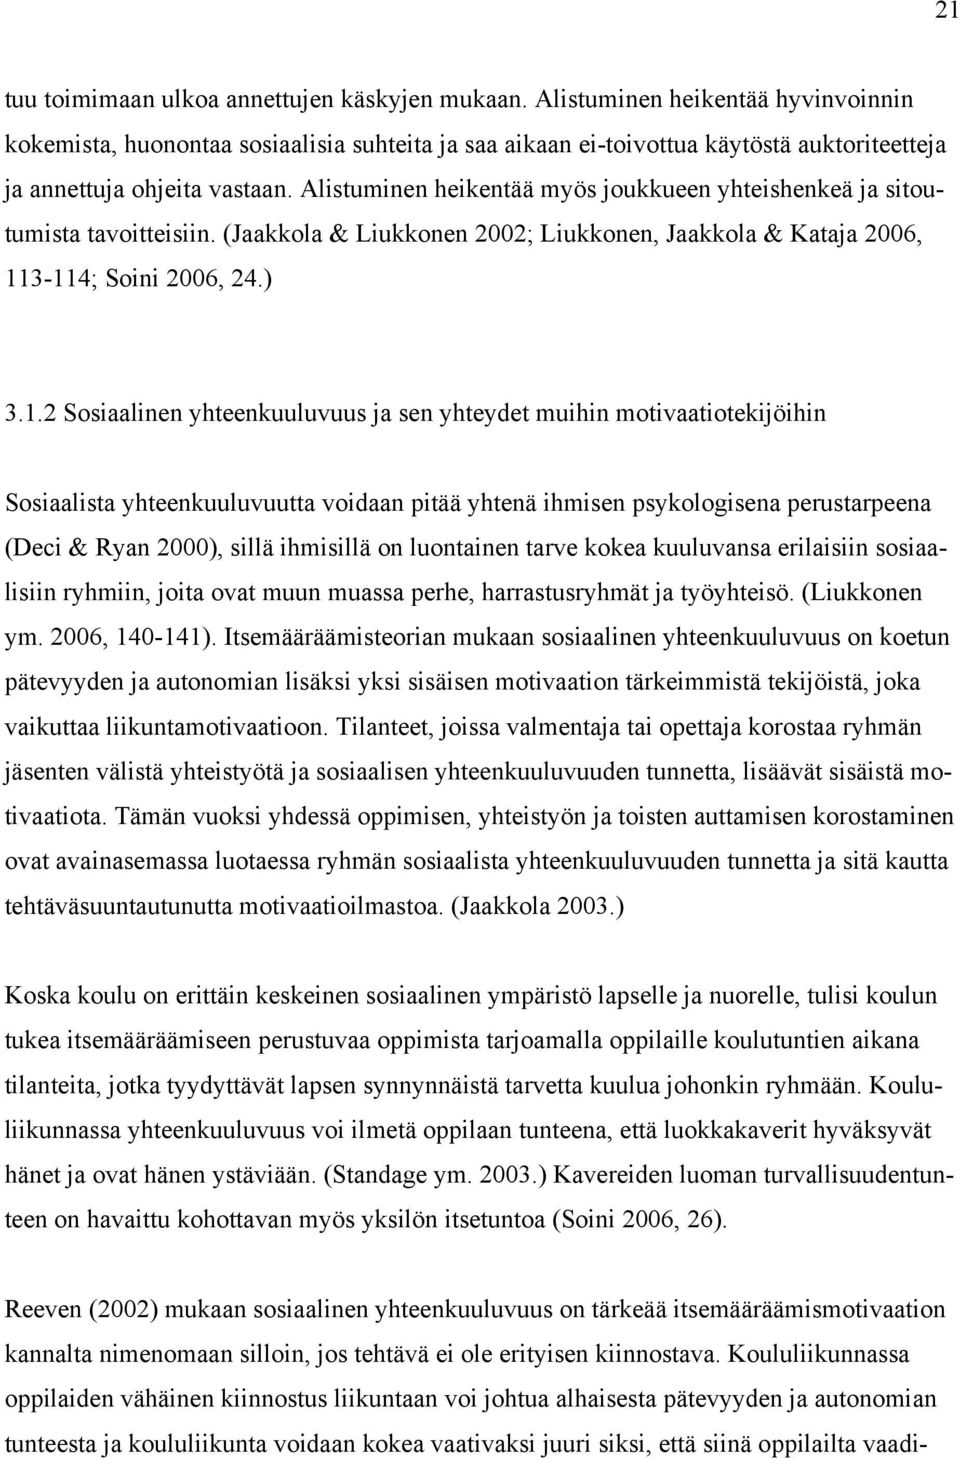 Alistuminen heikentää myös joukkueen yhteishenkeä ja sitoutumista tavoitteisiin. (Jaakkola & Liukkonen 2002; Liukkonen, Jaakkola & Kataja 2006, 11